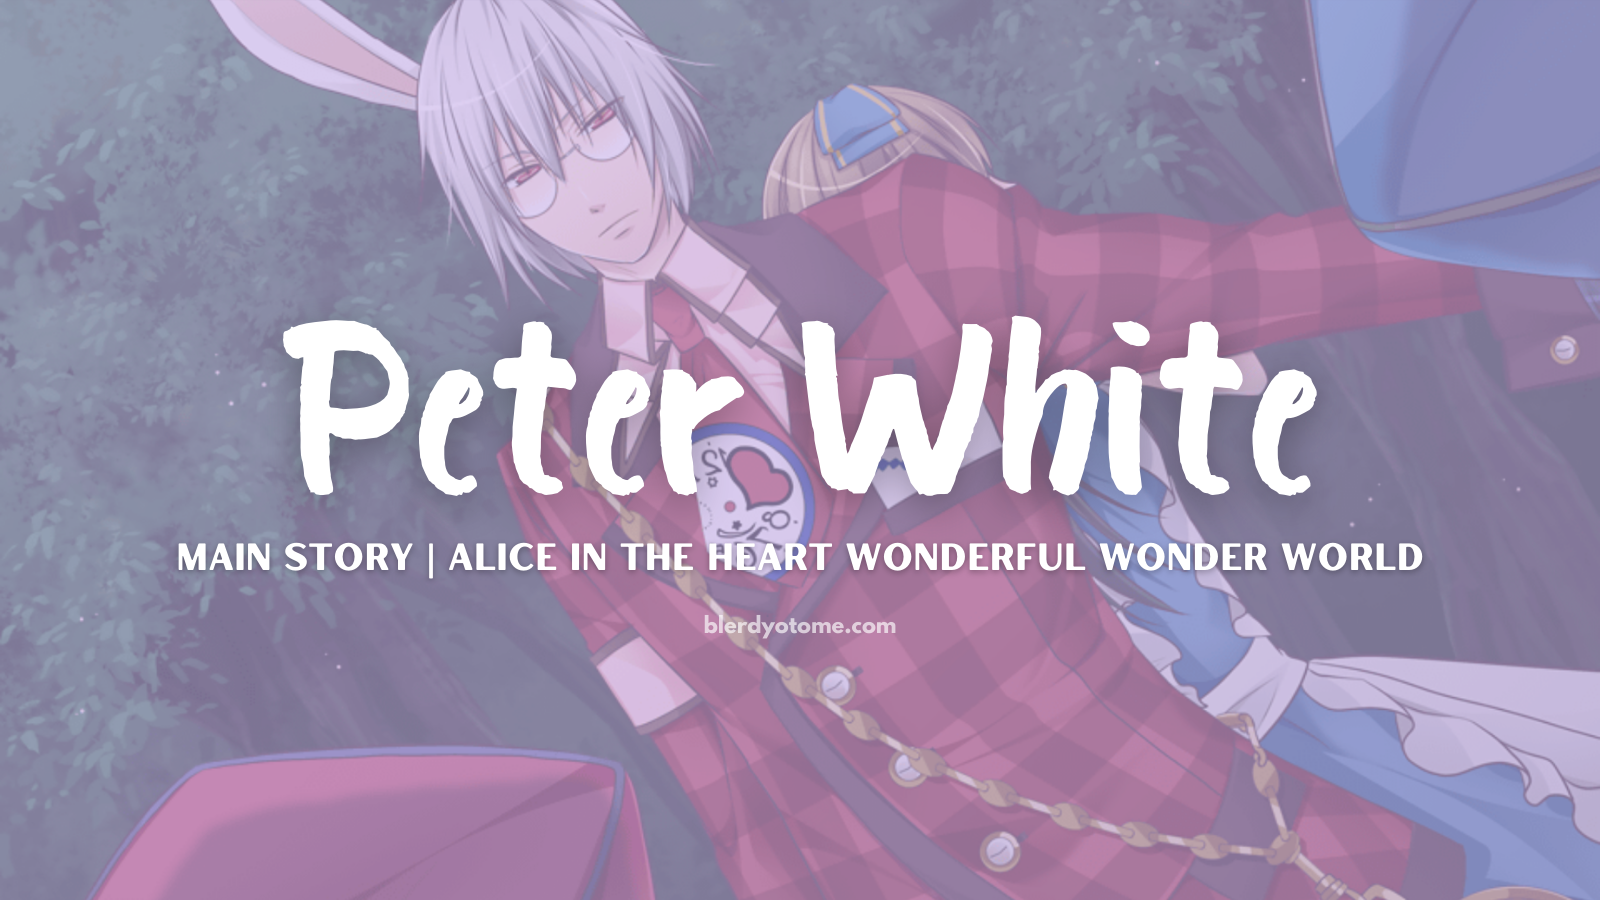 Heart no Kuni no Alice Peter White